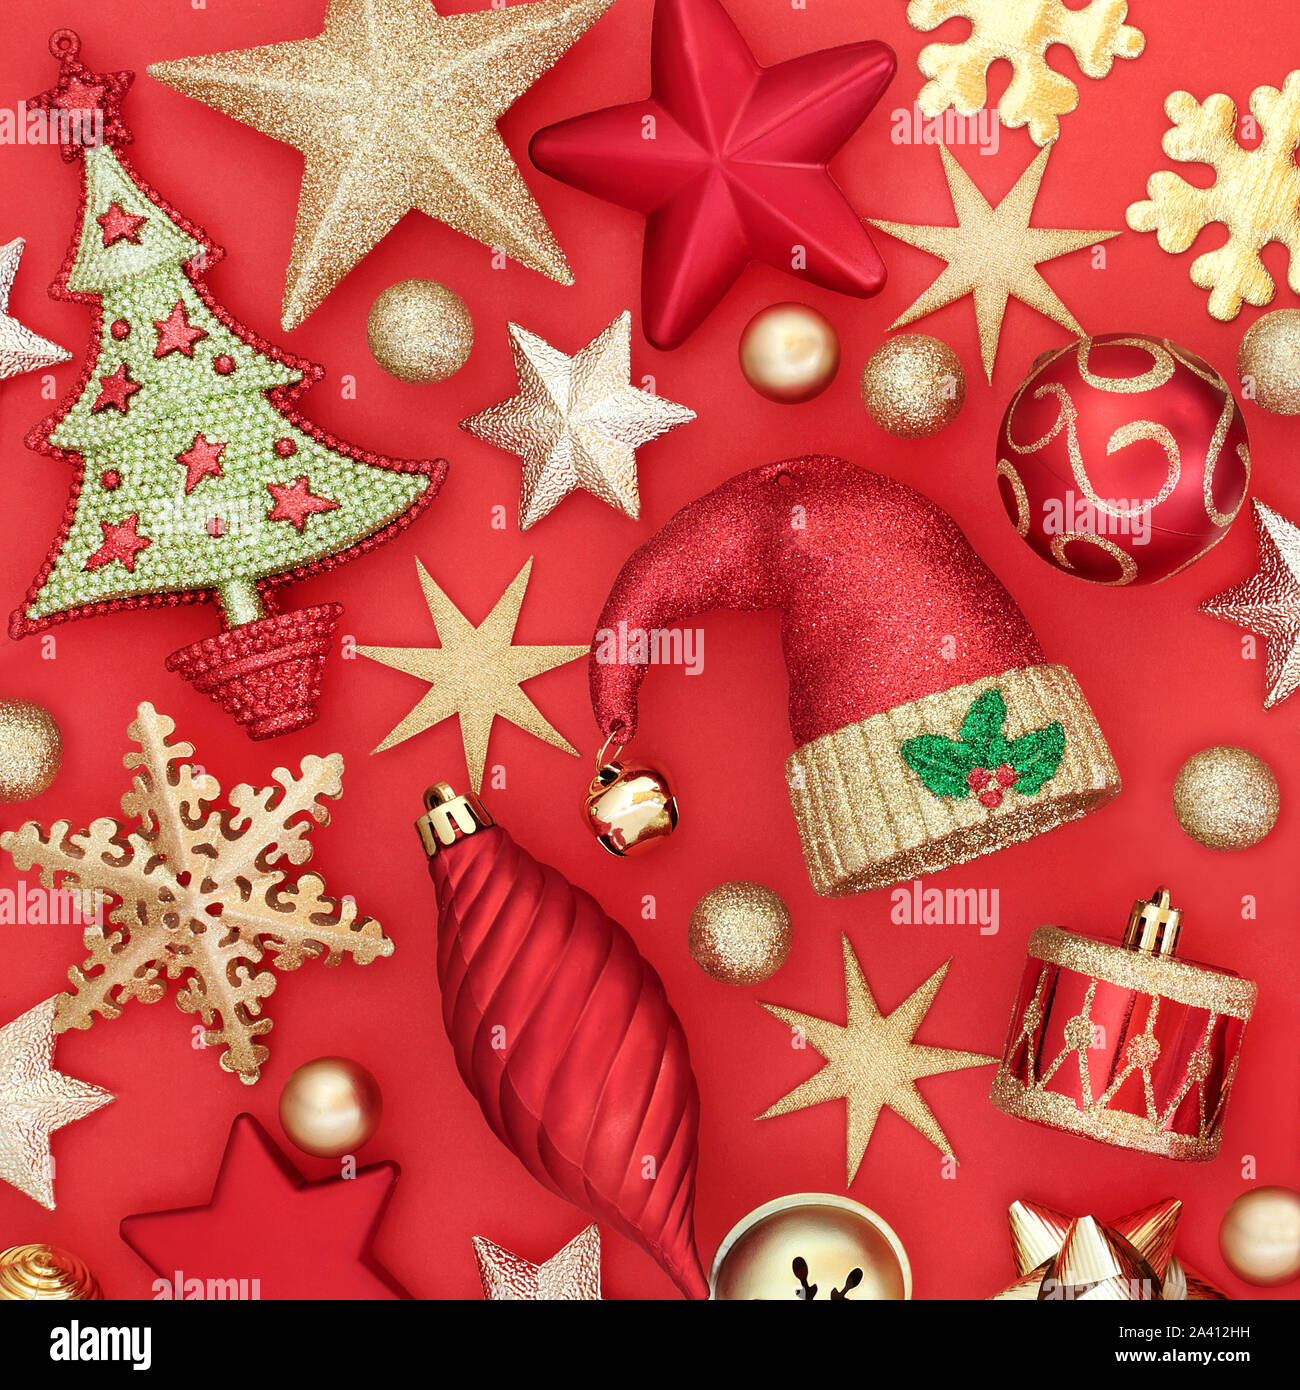 Décorations de Noël sur fond rouge. Carte de vœux traditionnels pour les fêtes. Banque D'Images